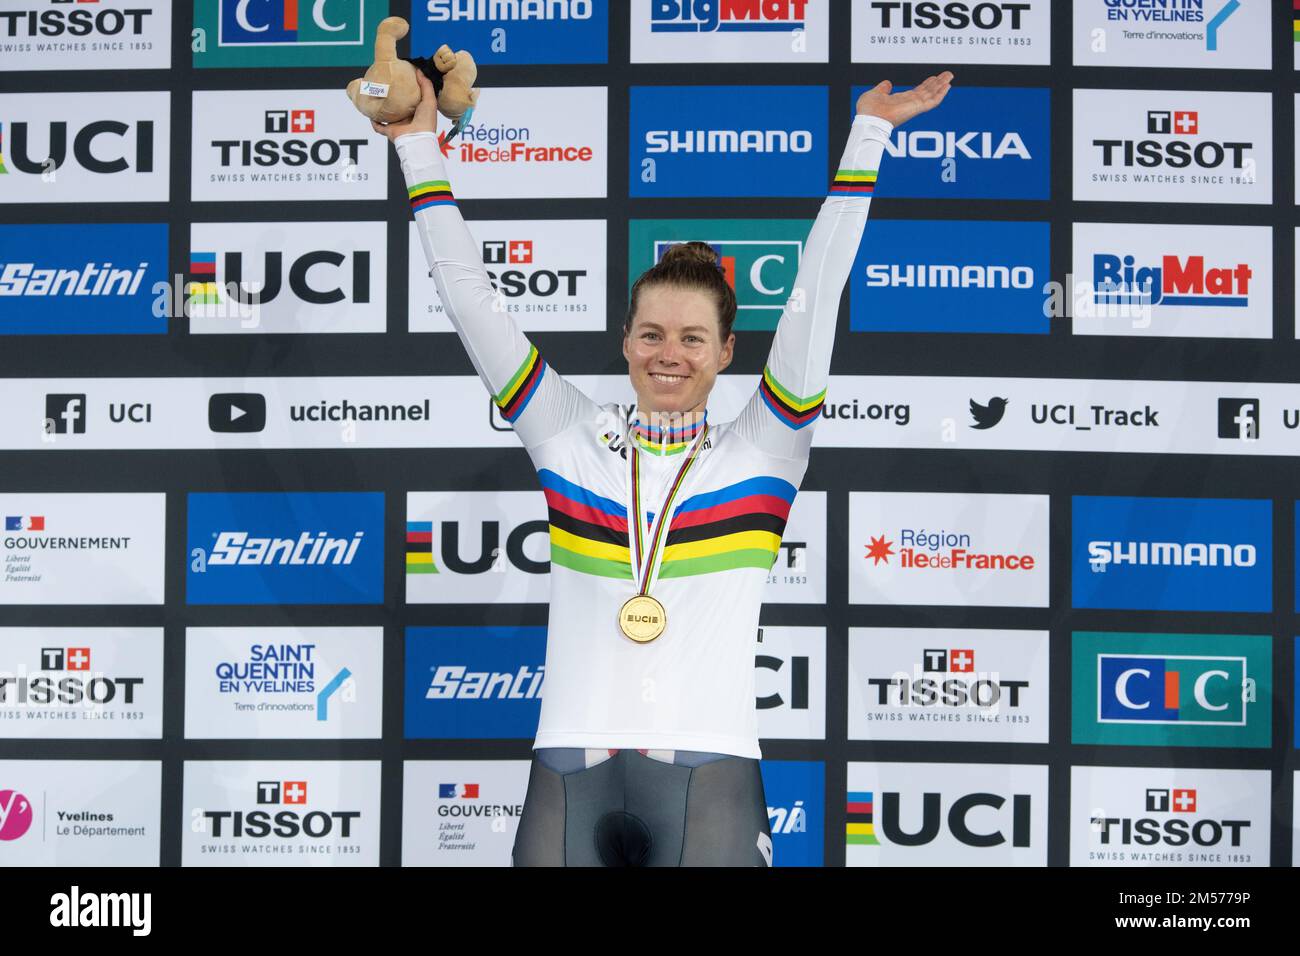 Jennifer Valente aus den USA, Weltmeisterin im Frauenomnium, mit Goldmedaille und Regenbogentrikot, bei der UCI Track World Championships 2022 Stockfoto